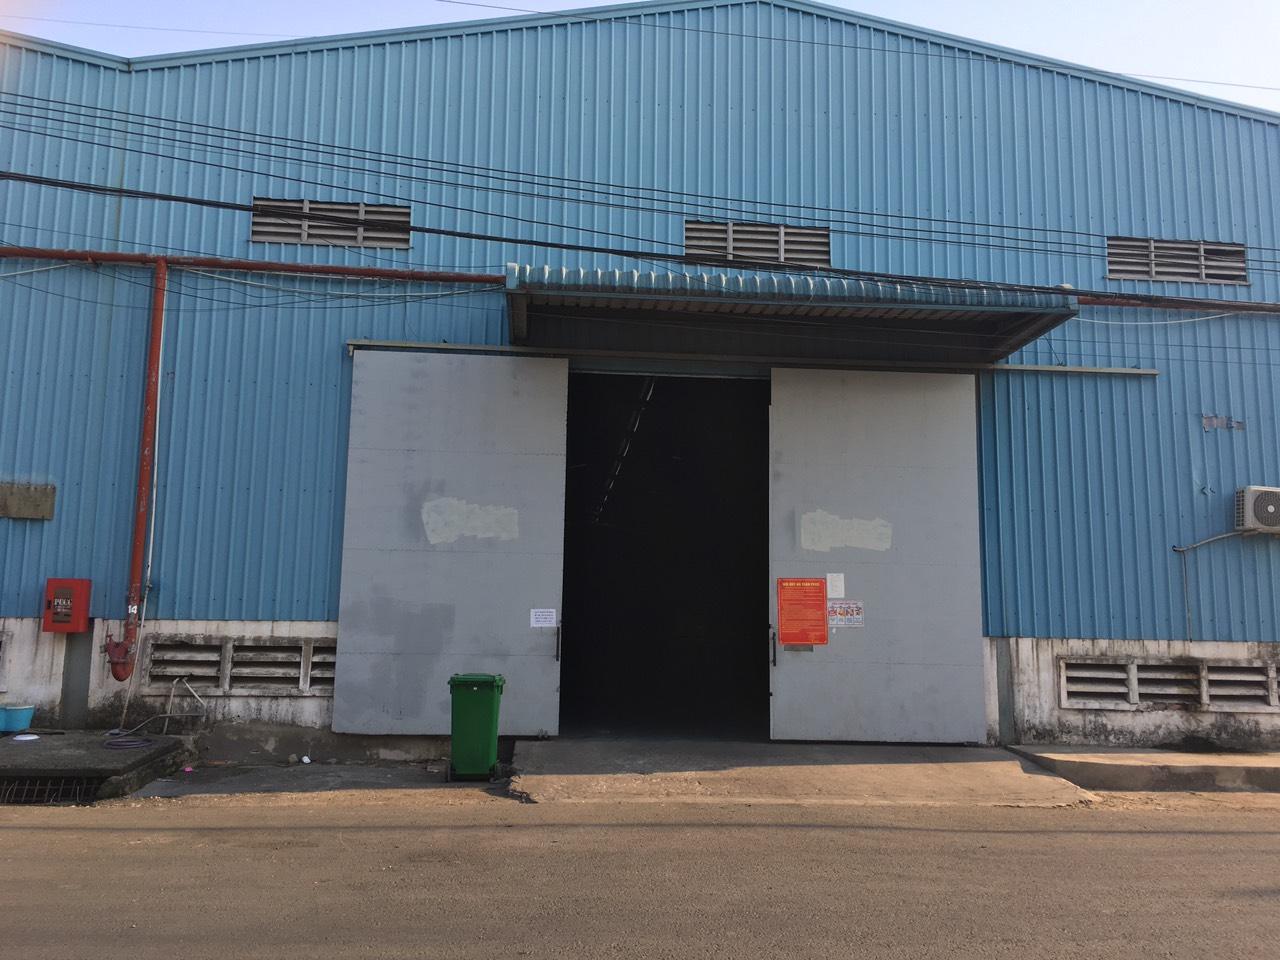 công ty tnhh p&c warehouse logistics cần cho thuê kho tại khu cực kcn sóng thần và đồng an 1